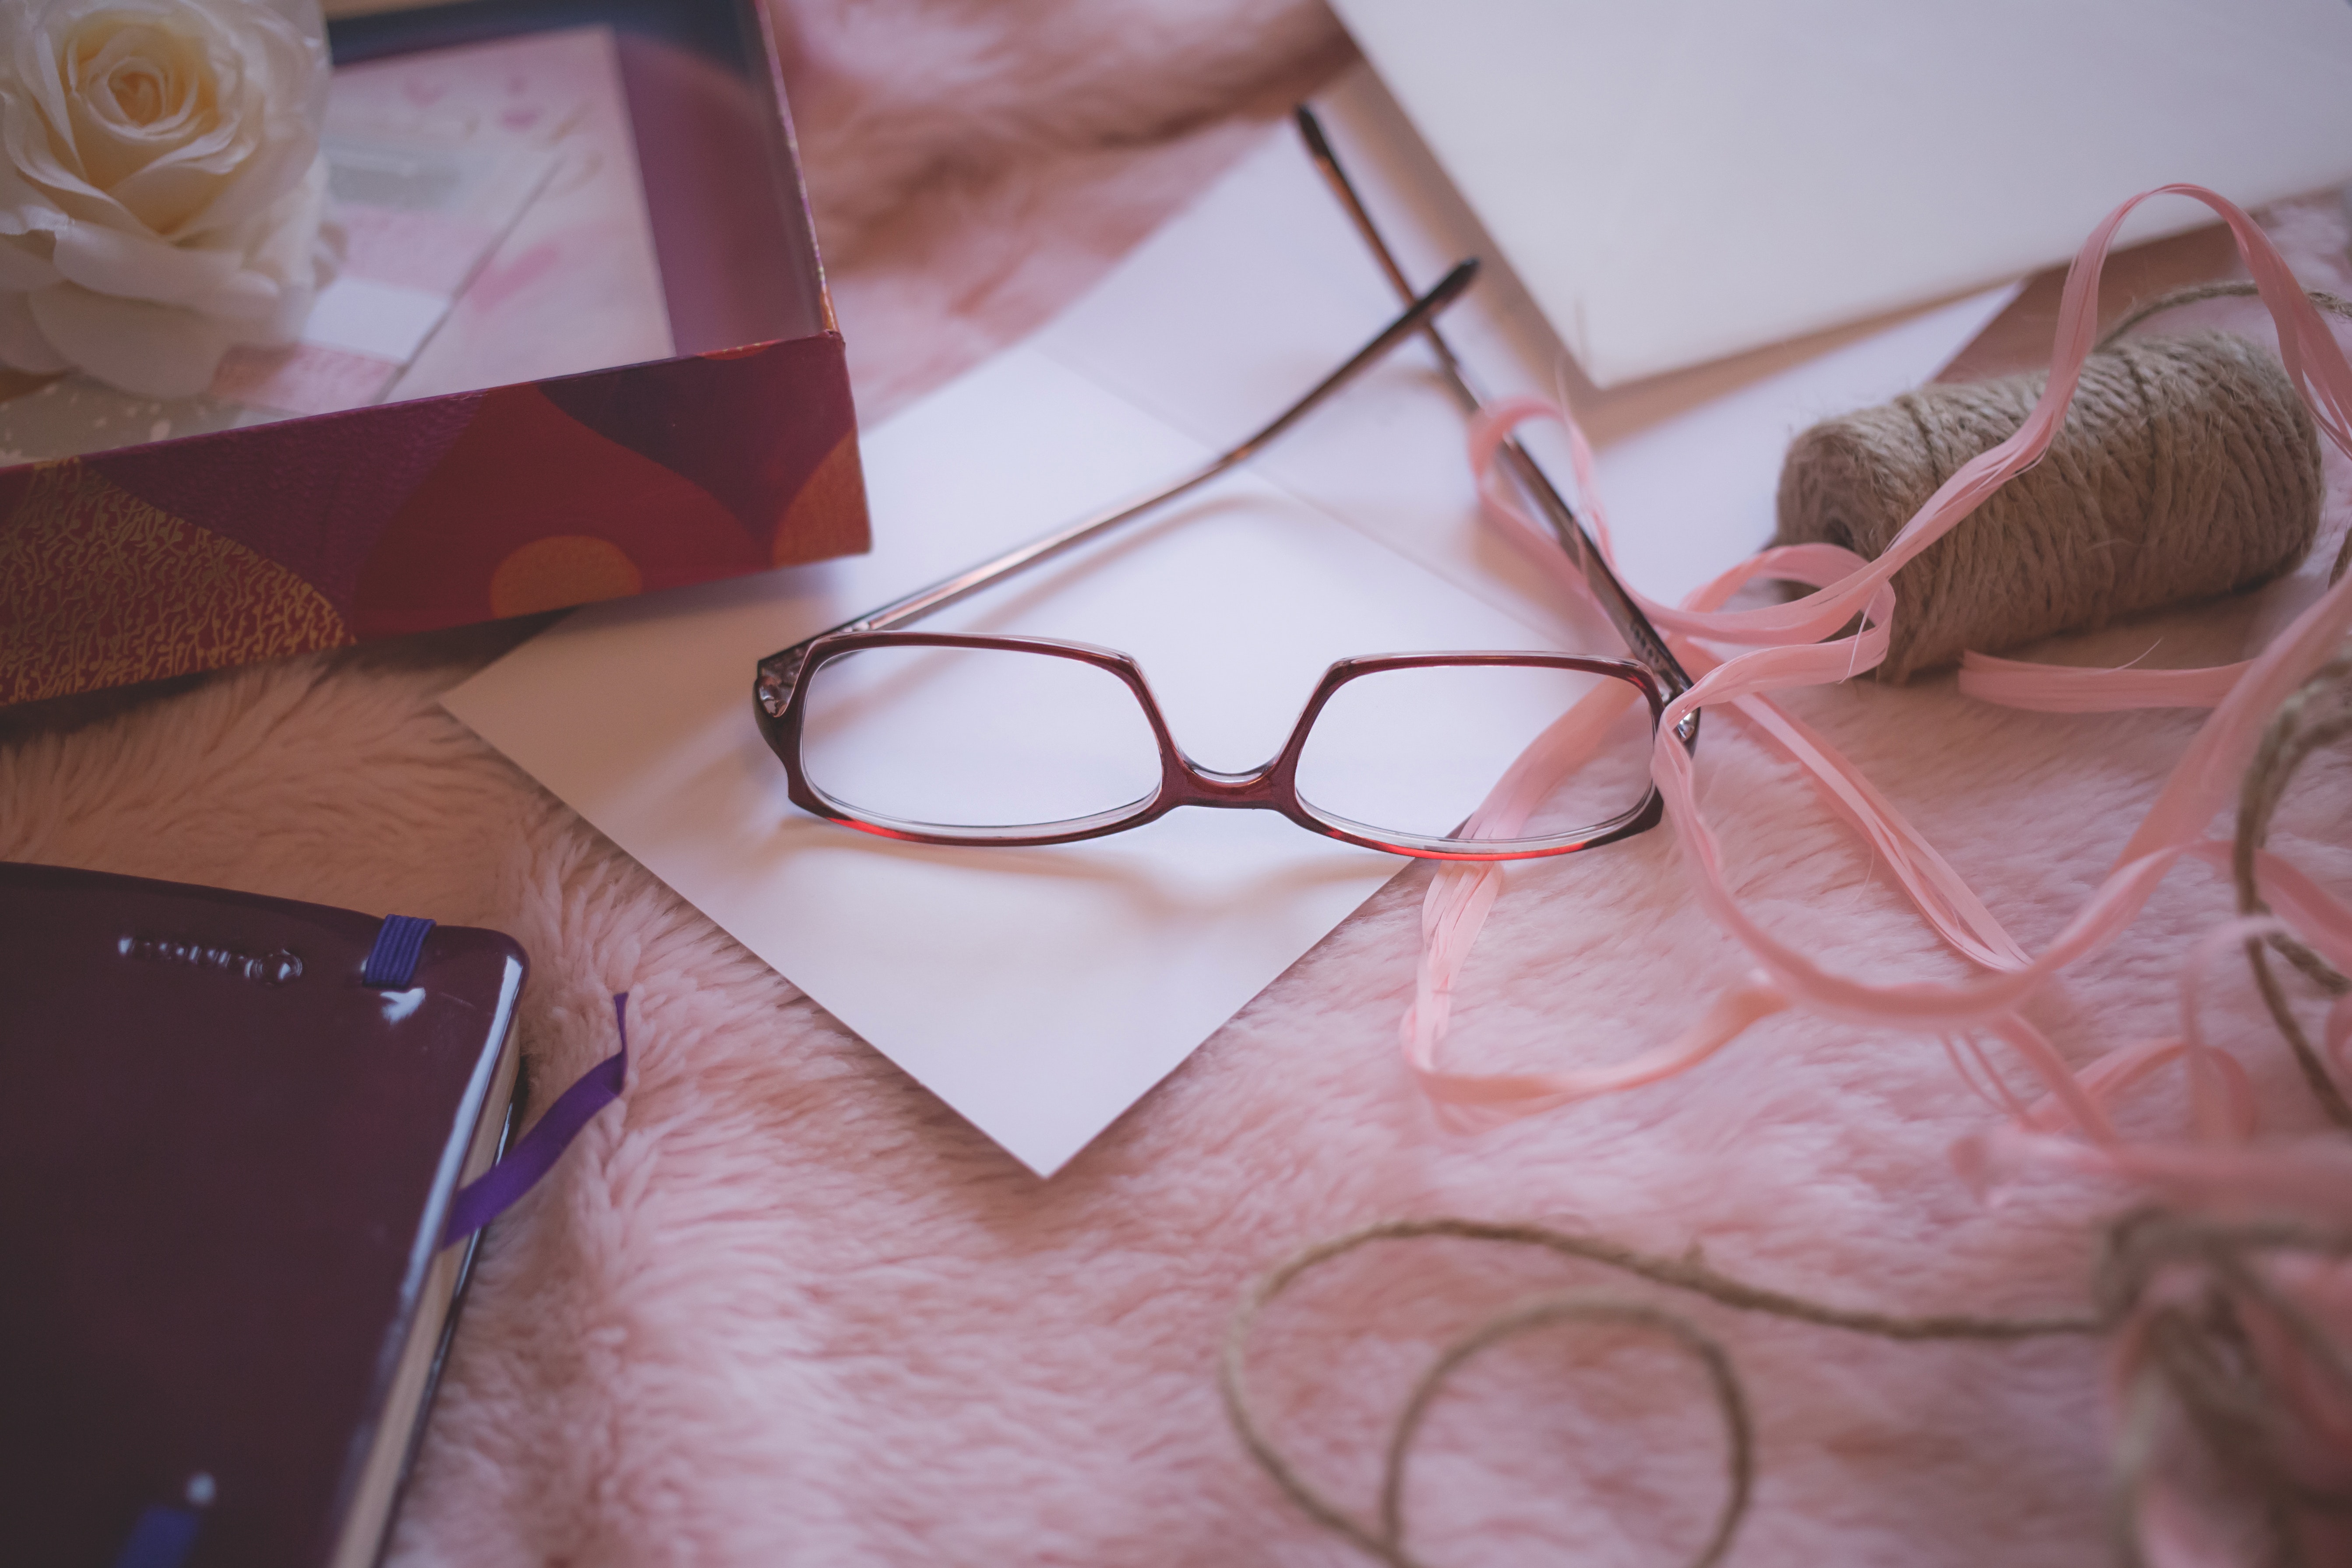 Eyeglasses beside pink yarn on pink bed blanket photo